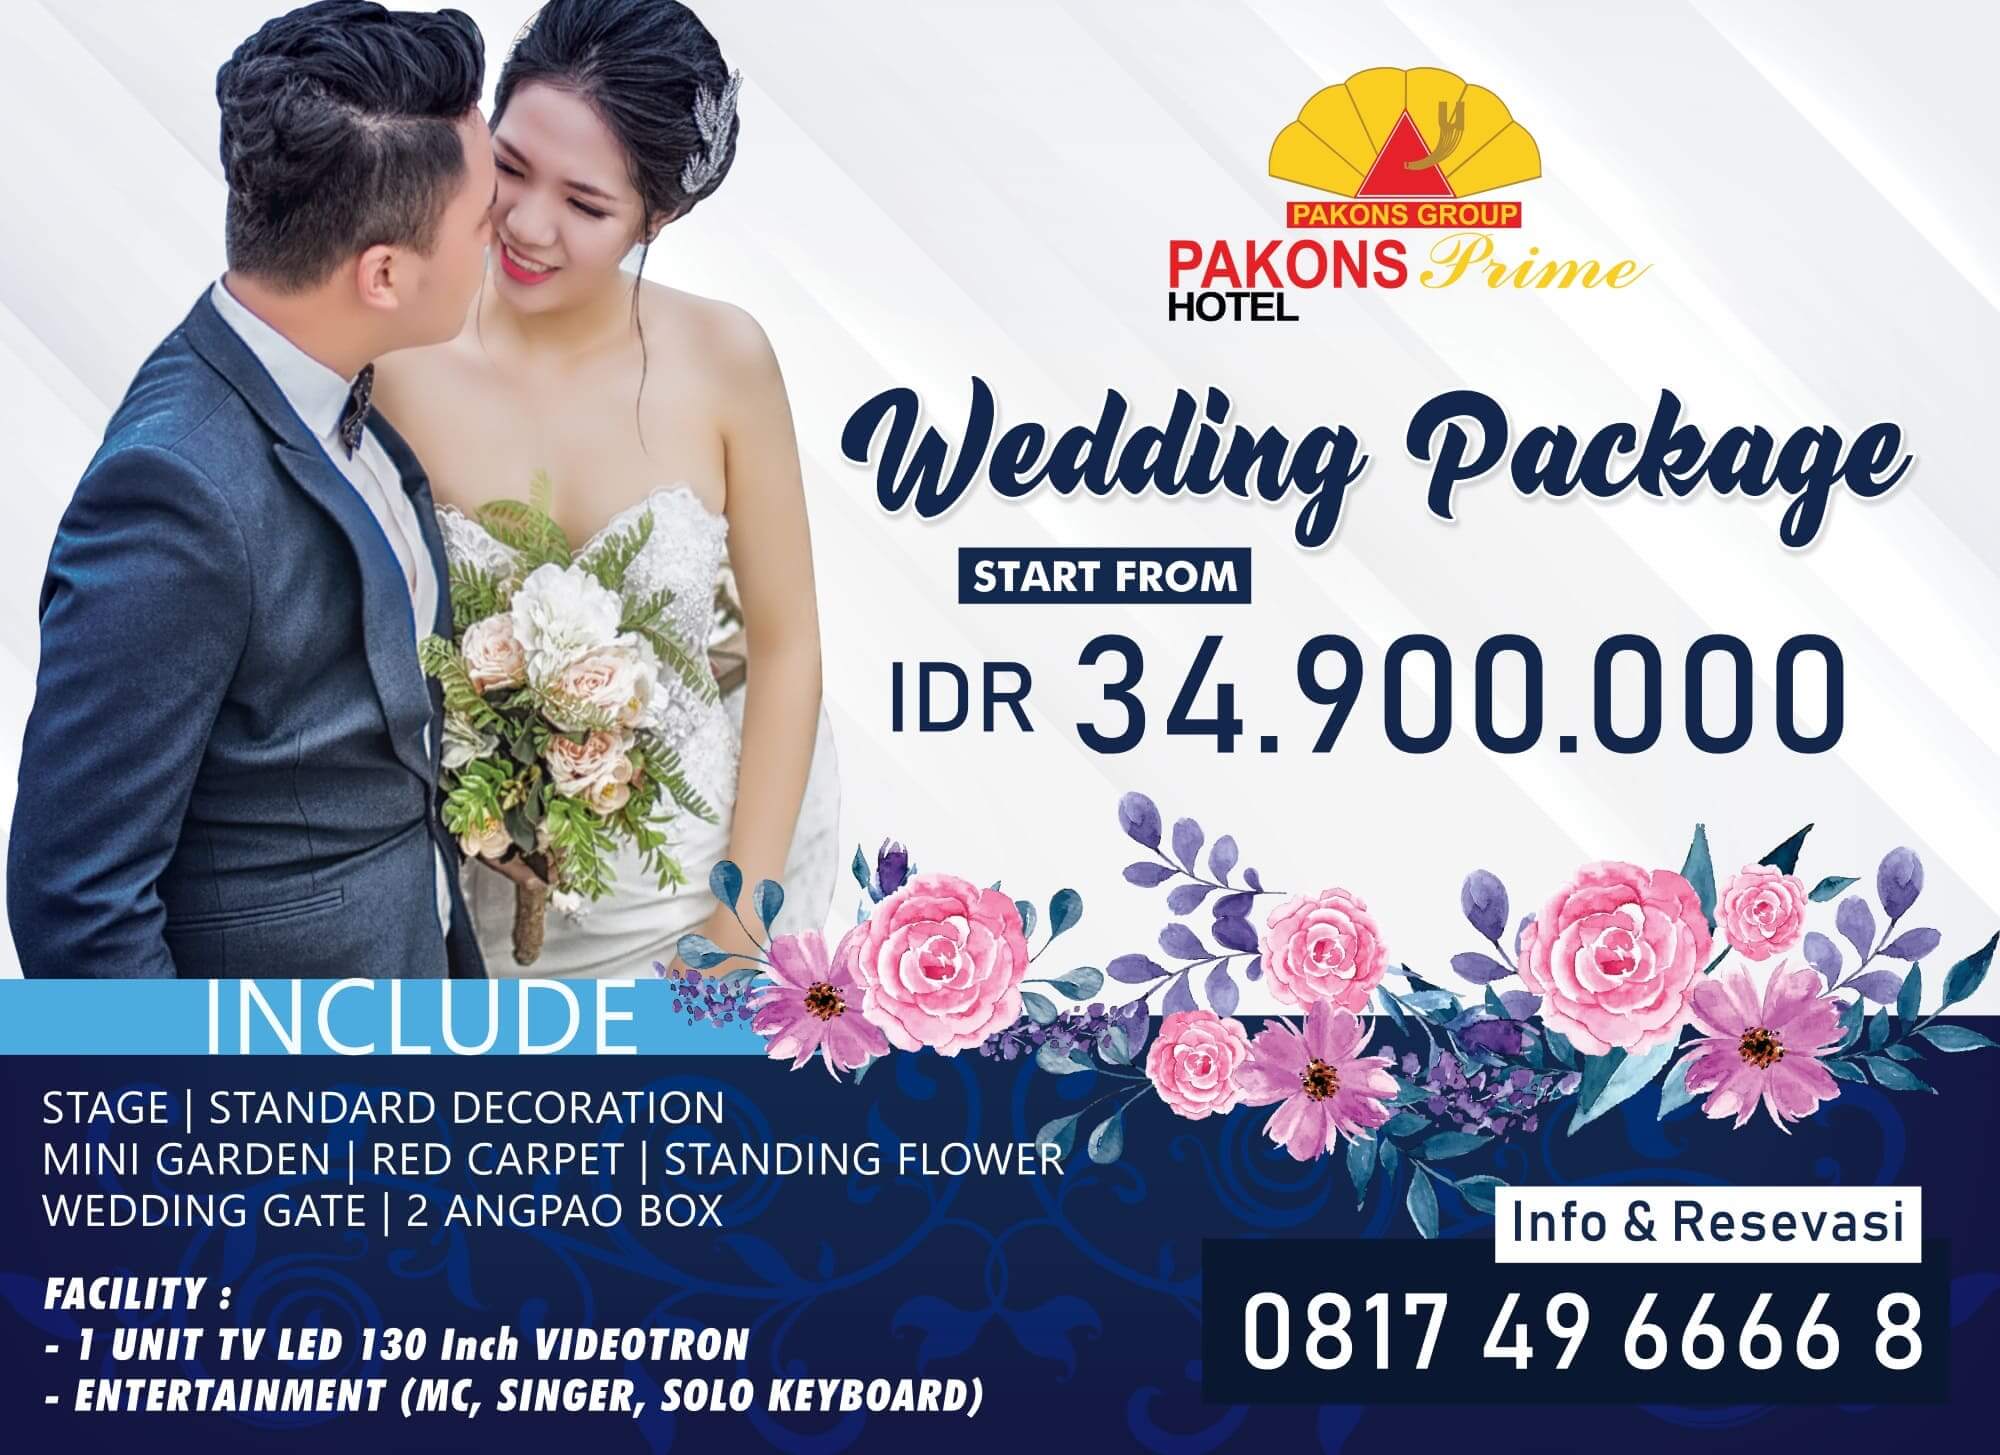 Wedding Package Pakons Prime Hotel Mulai Dari IDR. 34.900.000